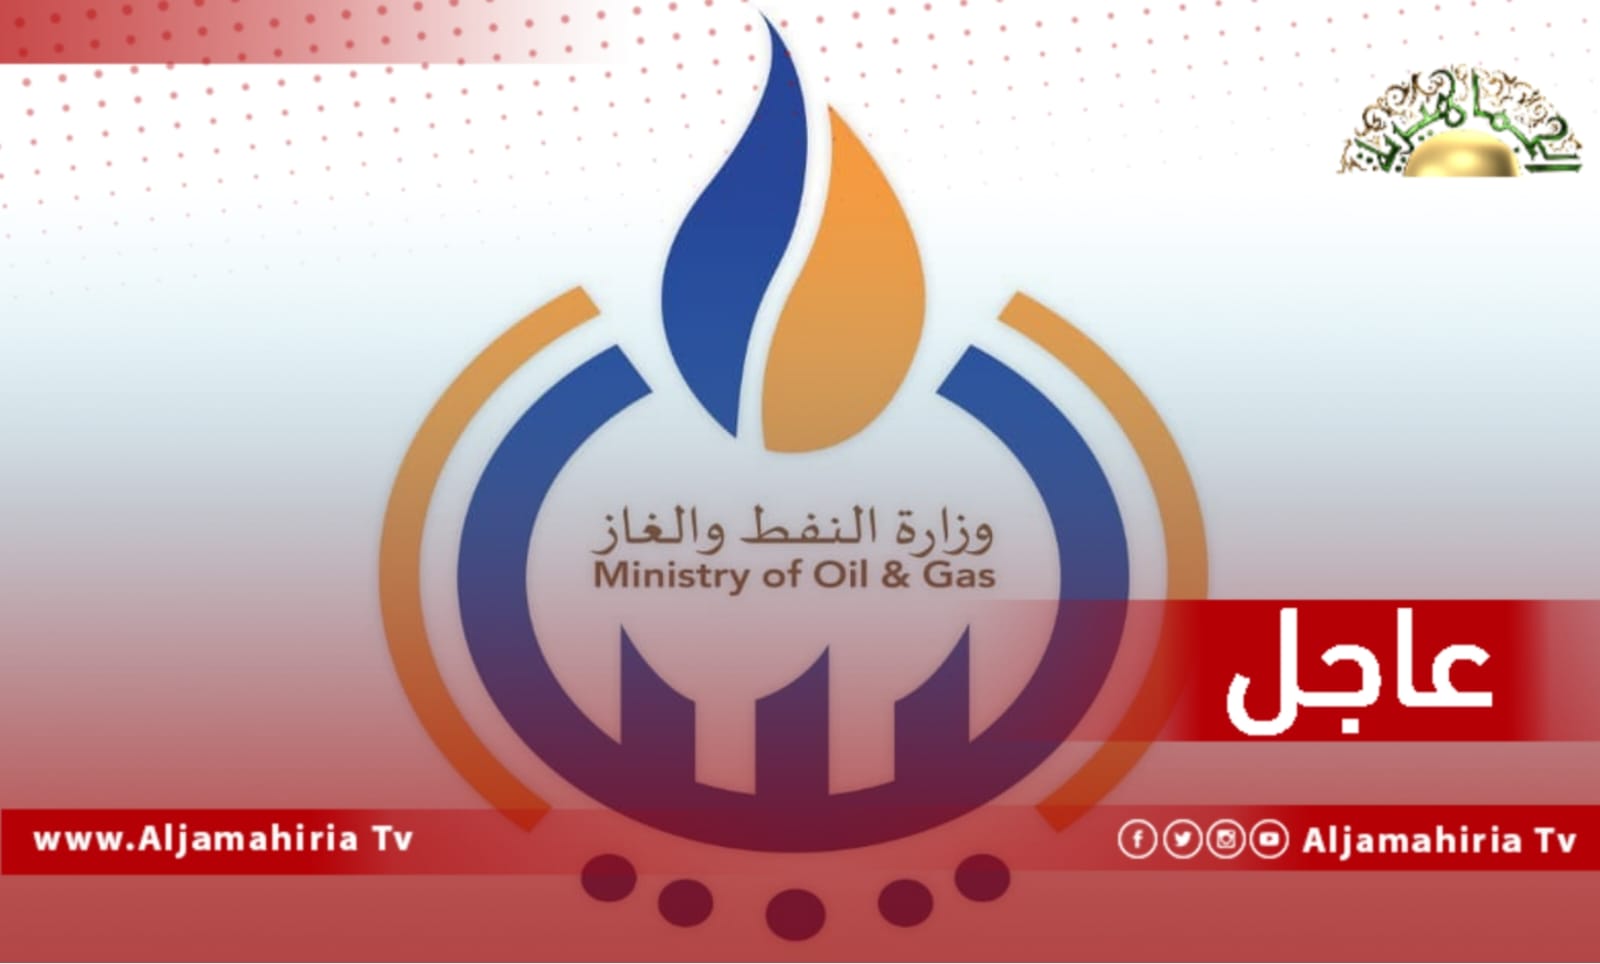 عاجل| وزارة النفط تعلن تفعيل قرار الزيادة الحقلية التي أقرها الوزير بعد الموافقة عليه من قبل رئيس مؤسسة النفط فرحات بن قداره